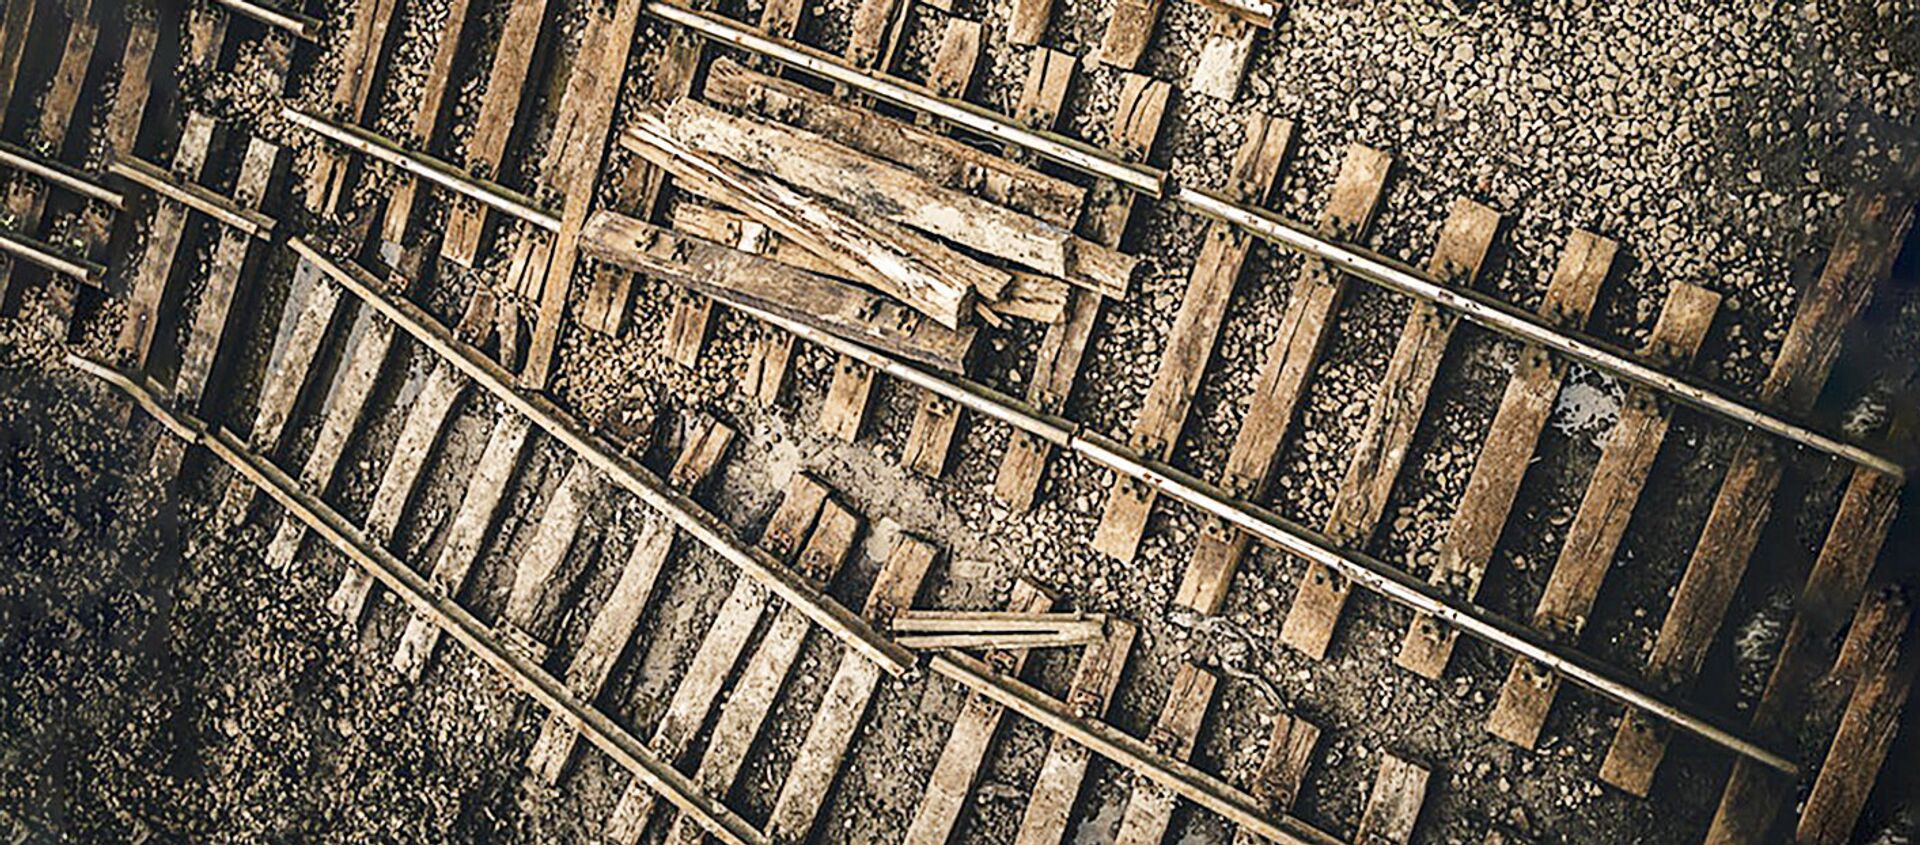 Разобранная железная дорога - Sputnik Латвия, 1920, 25.01.2021